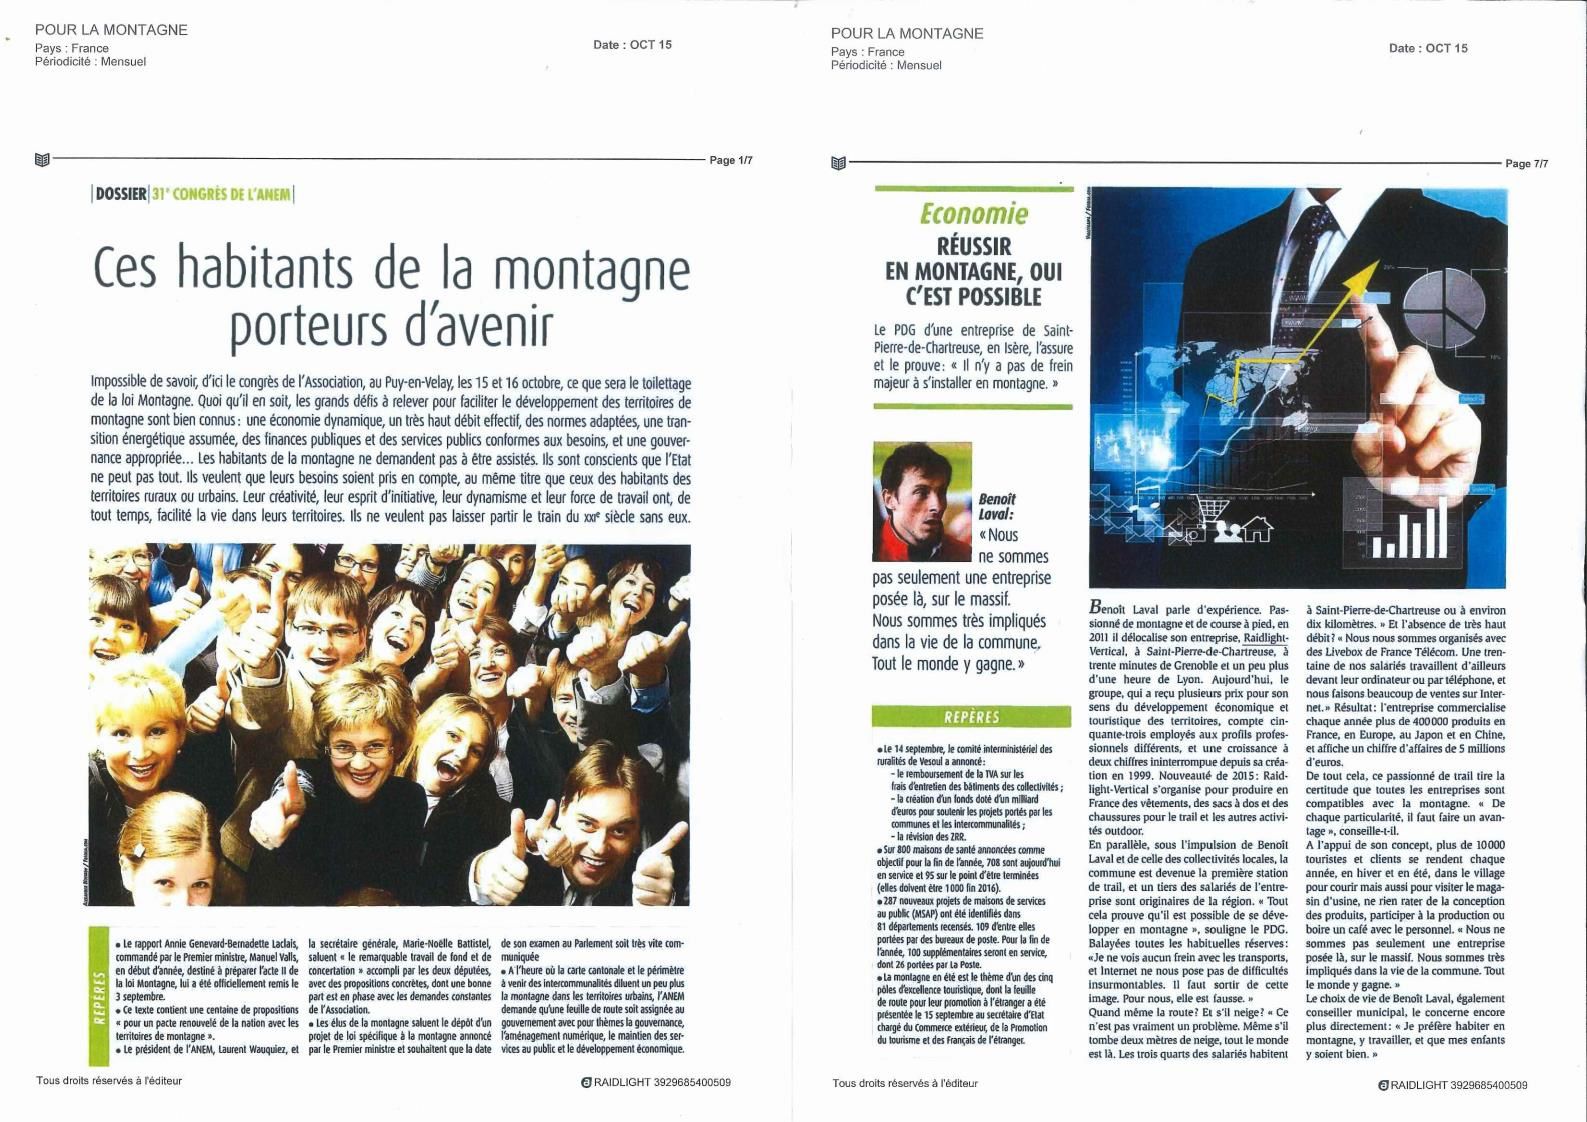 Deux interviews de Benoit LAVAL, sur France Bleu Isère, et dans la revue de l'ANEM (Association Nationale des Elus de Montagne)